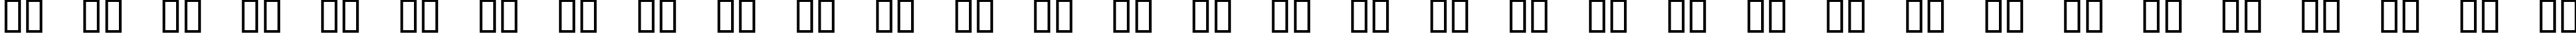 Пример написания русского алфавита шрифтом Action Jackson